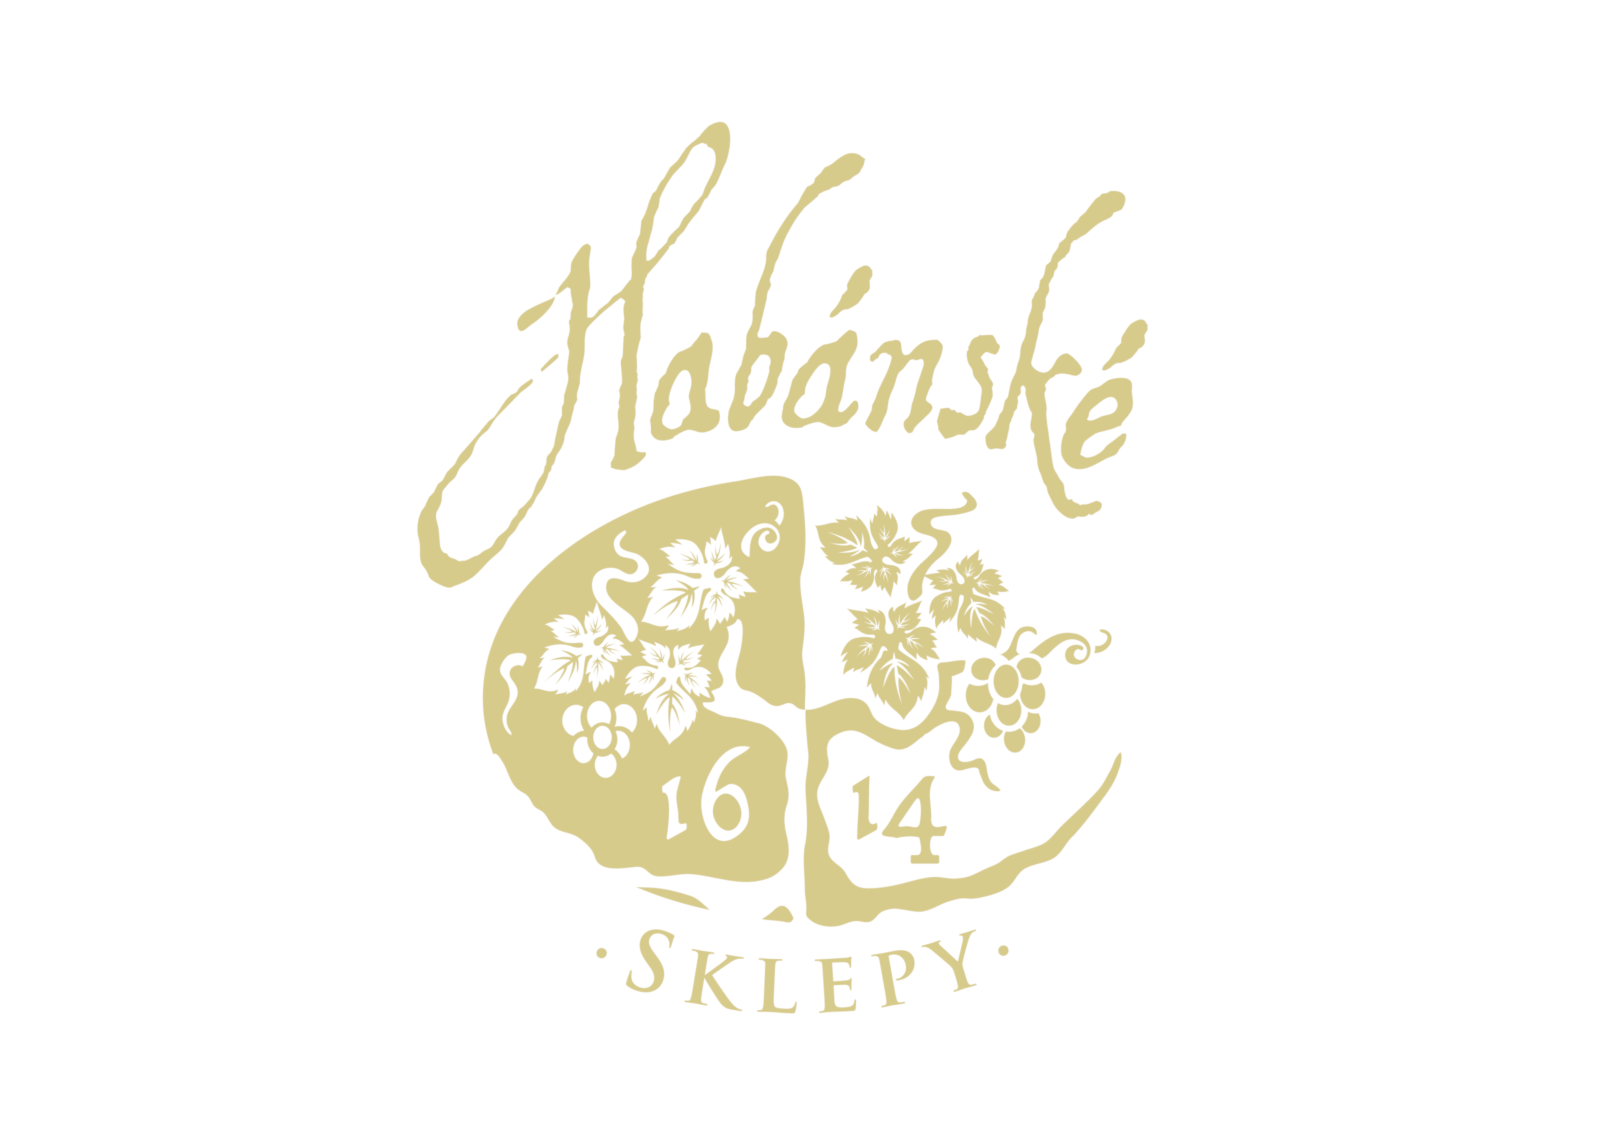 habánské sklepy logo